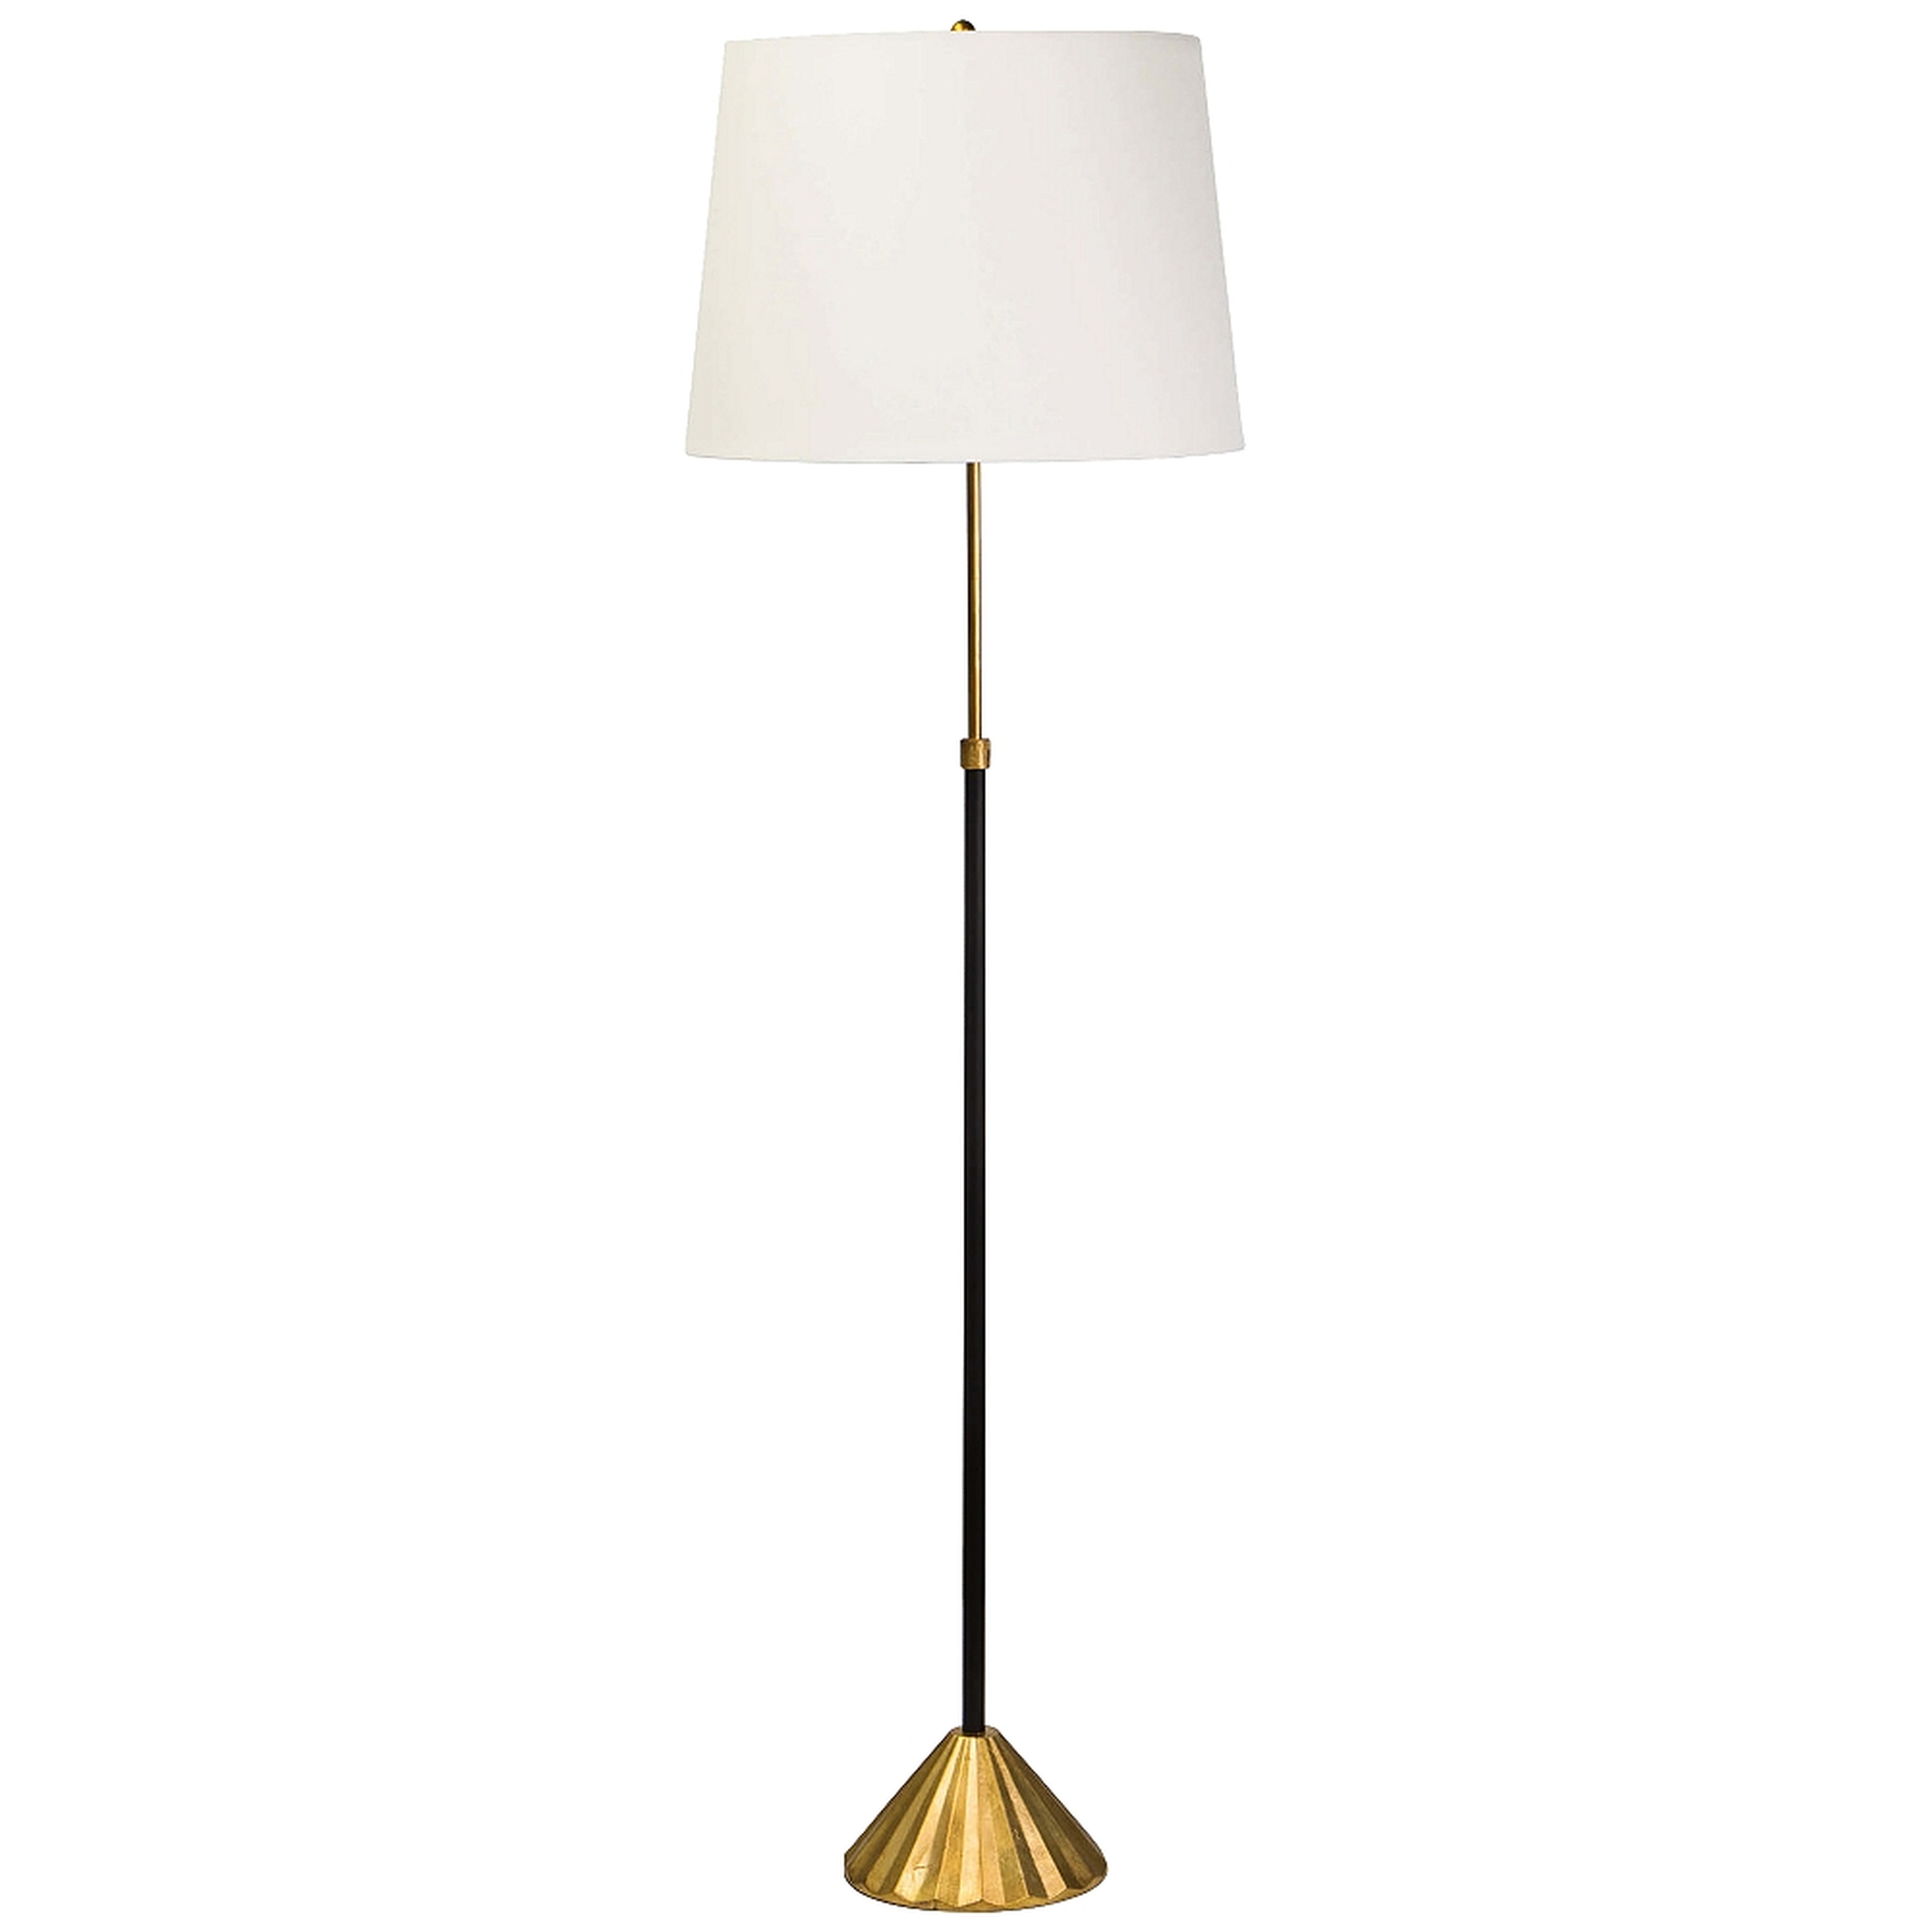 Regina Andrew Design Parasol Gold Leaf and Black Floor Lamp - Style # 86T90 - Lamps Plus